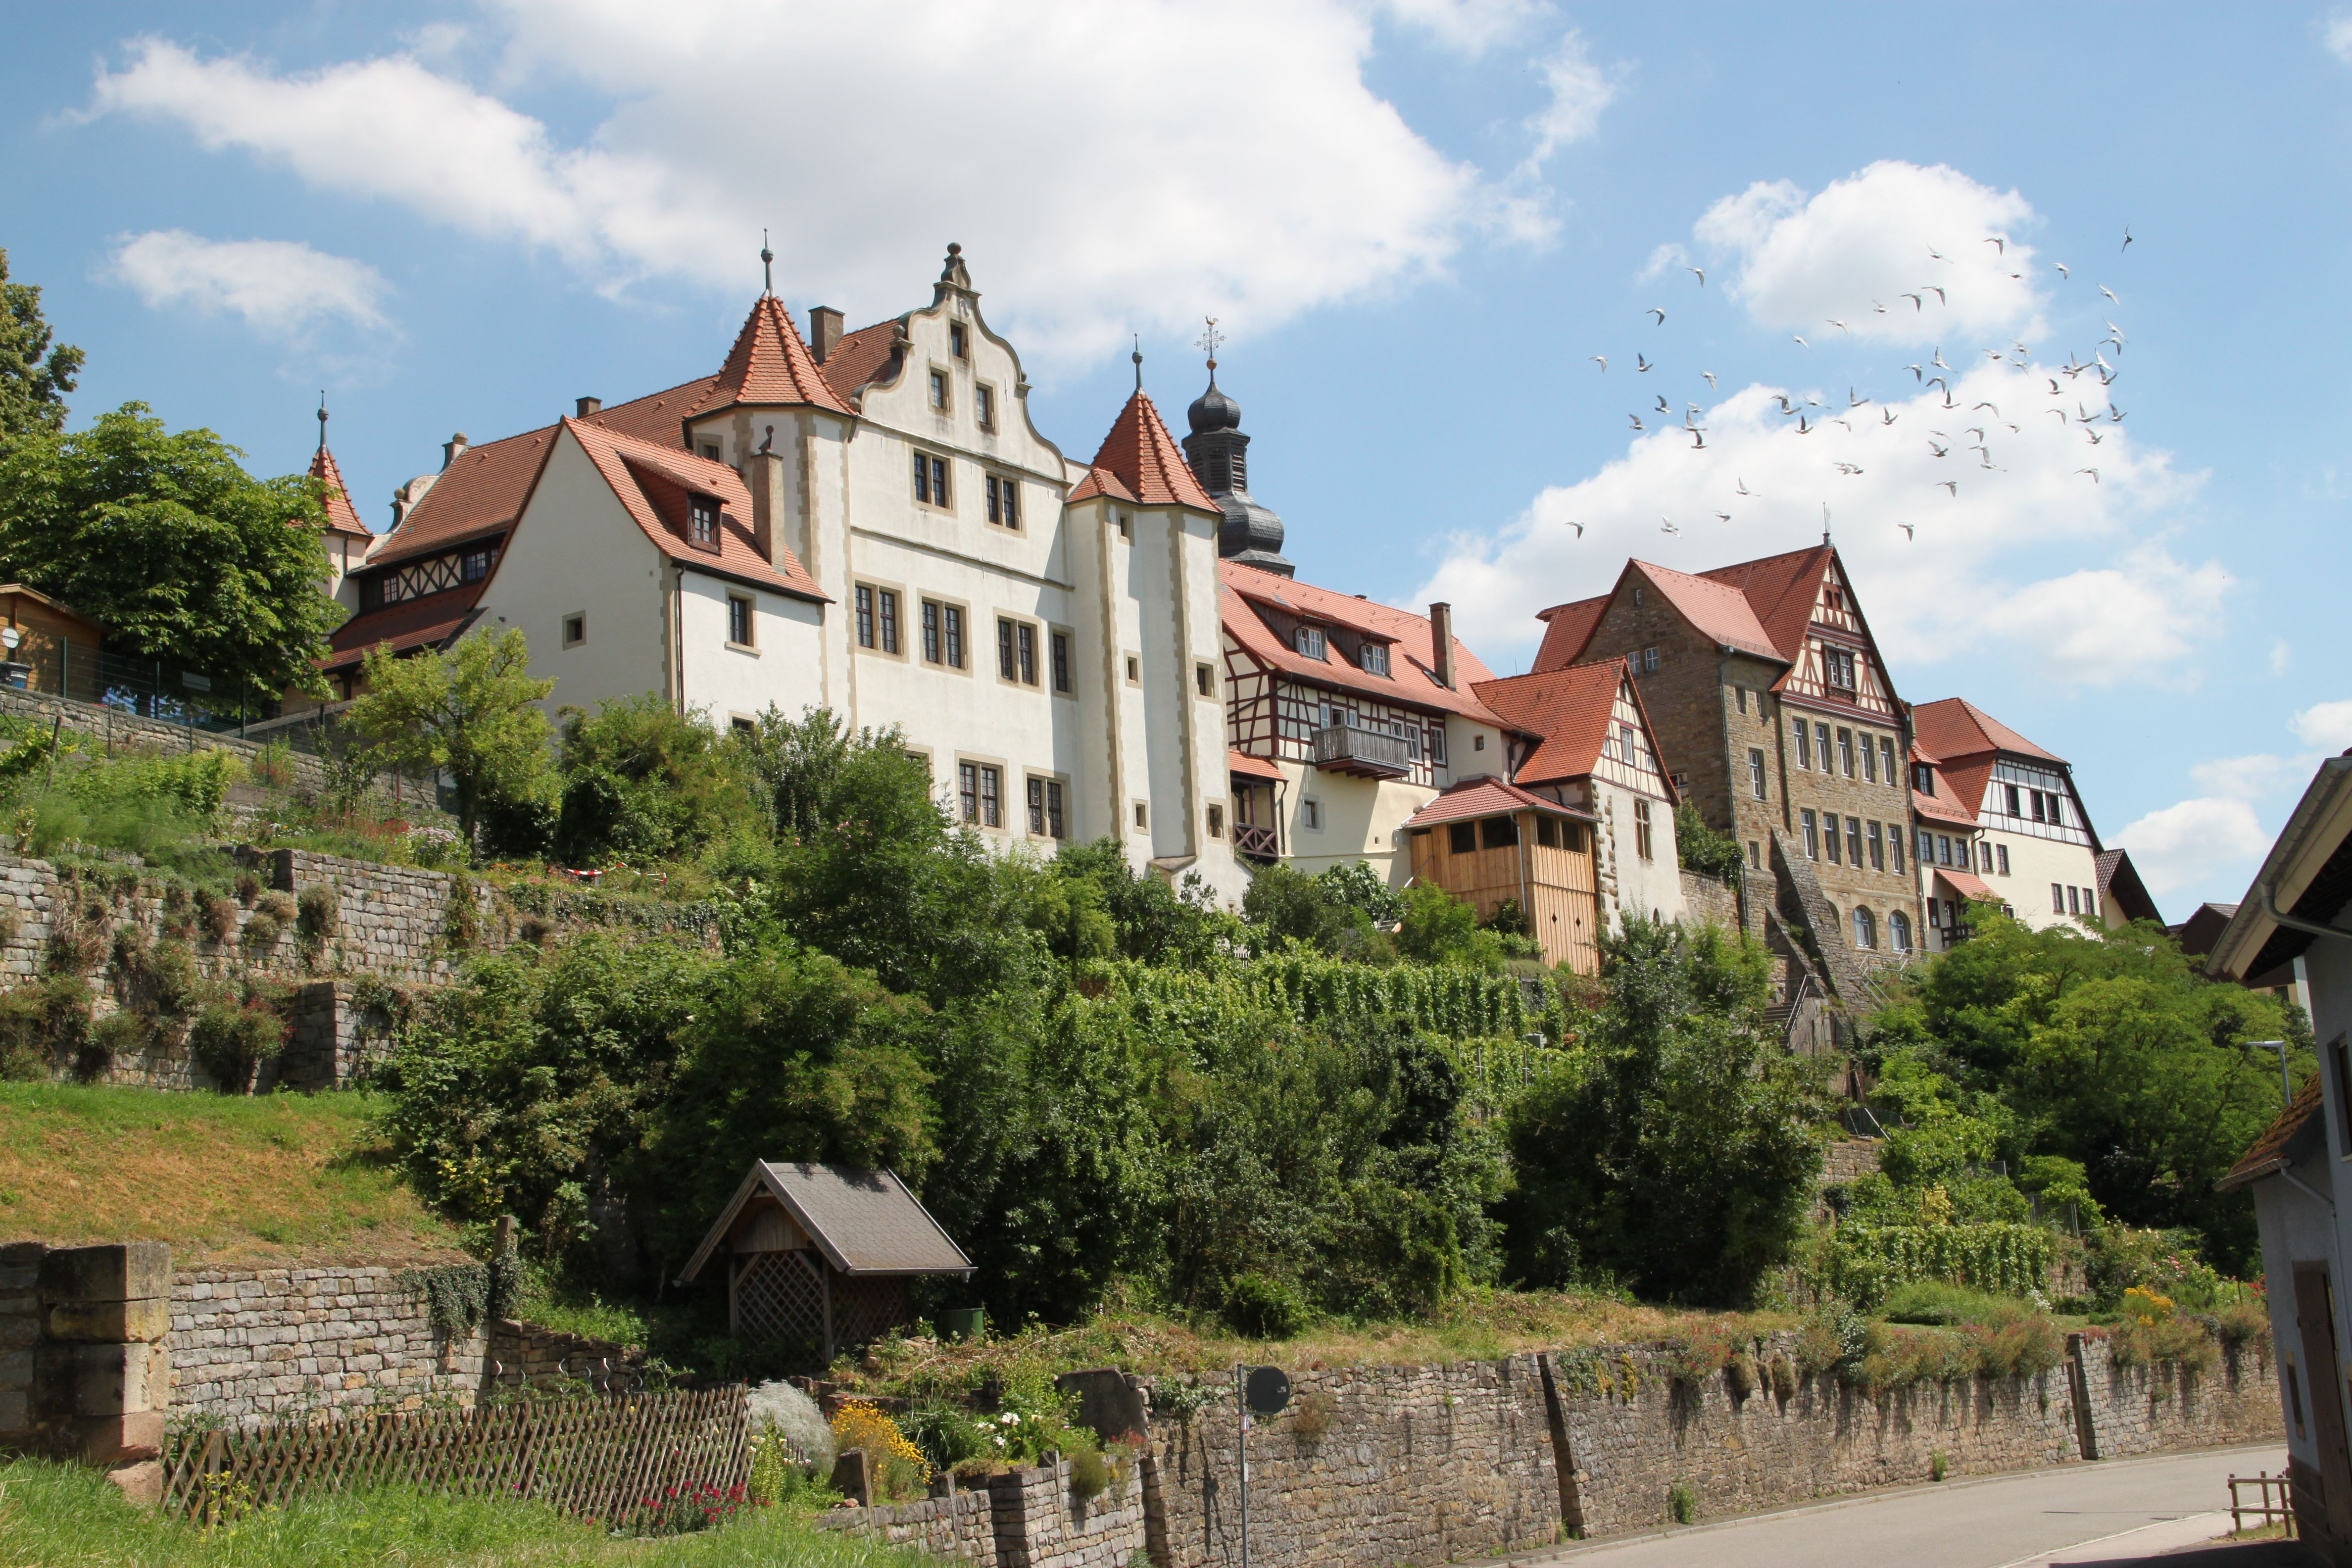 Graf-Eberstein-Schloss in Gochsheim mit seinen Trockenmauern